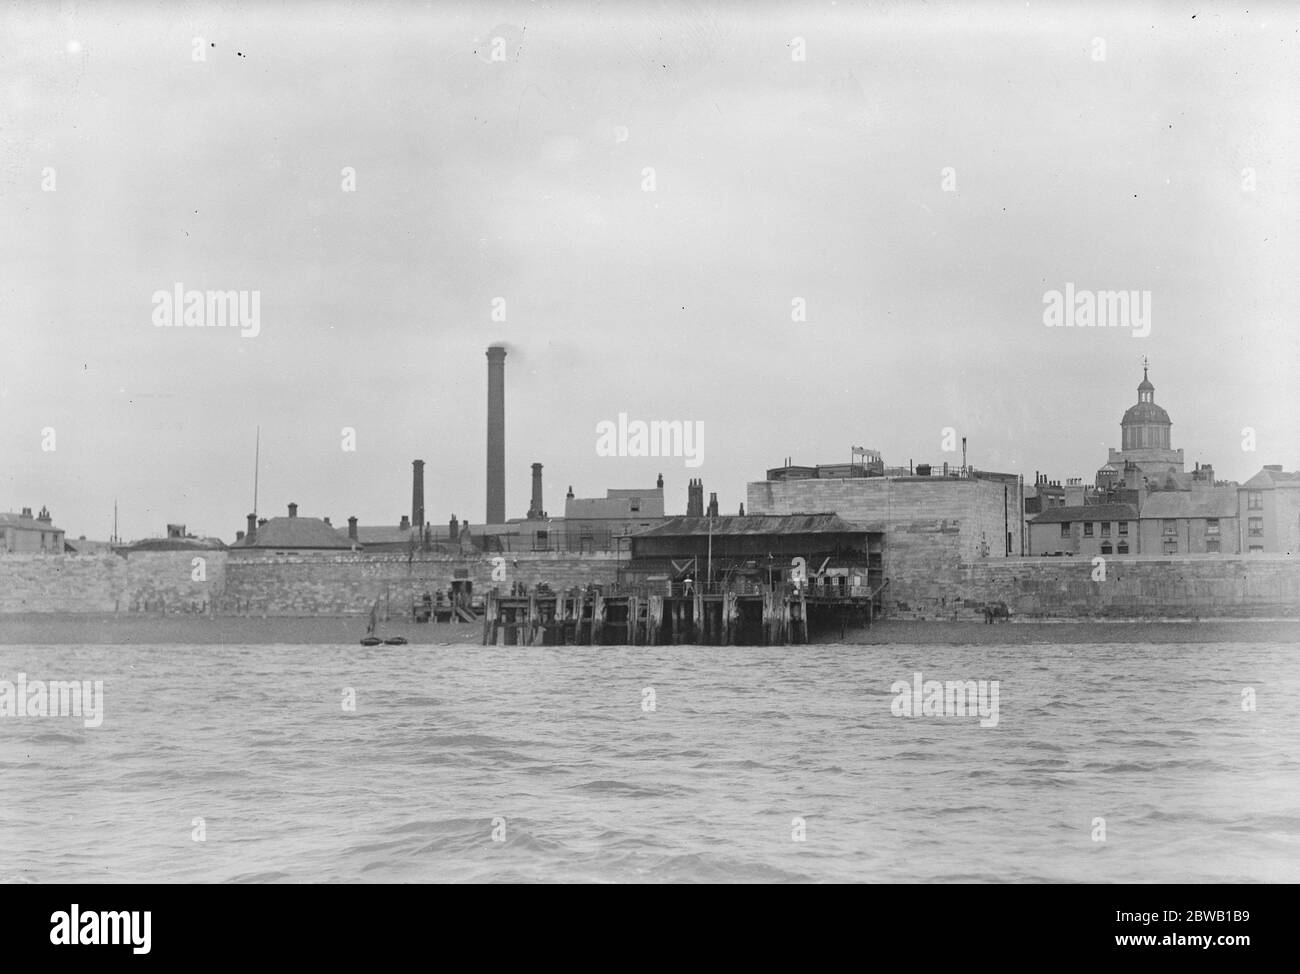 Dieser alte viktorianische Pier in Portsmouth, von dem Horatio Nelson, 1. Viscount Nelson nach Trafalgar segelte, soll abgerissen werden und ein aktueller Pleasure Pier am 31. Juli 1922 installiert werden Stockfoto